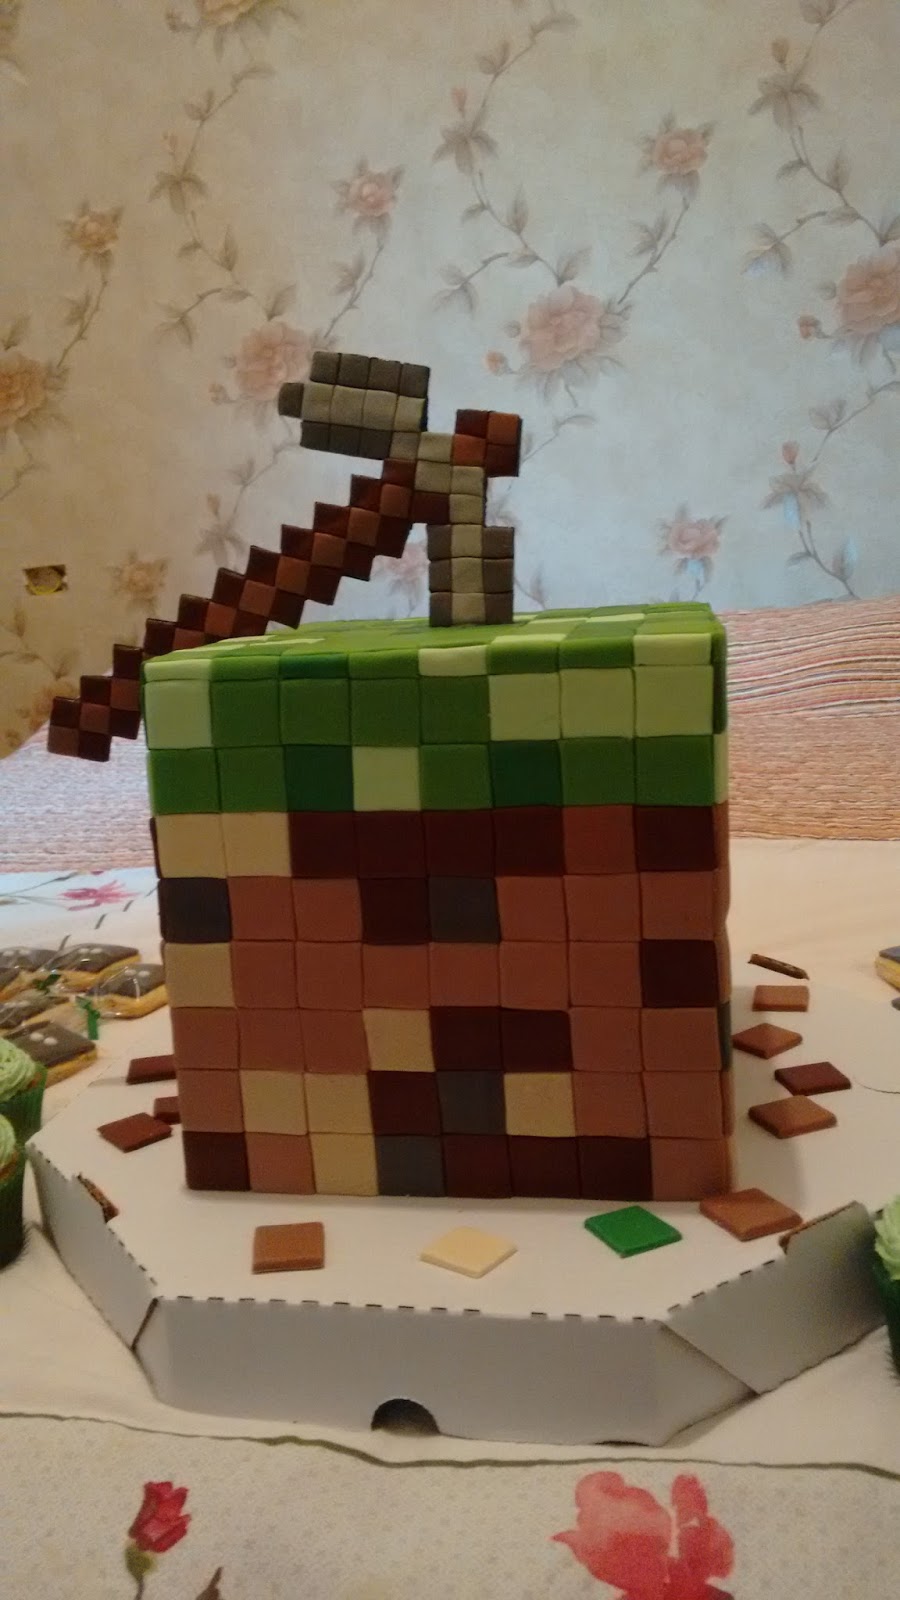 Bolo Fake Decorativo Minecraft - Empório das Lembrancinhas / Belas